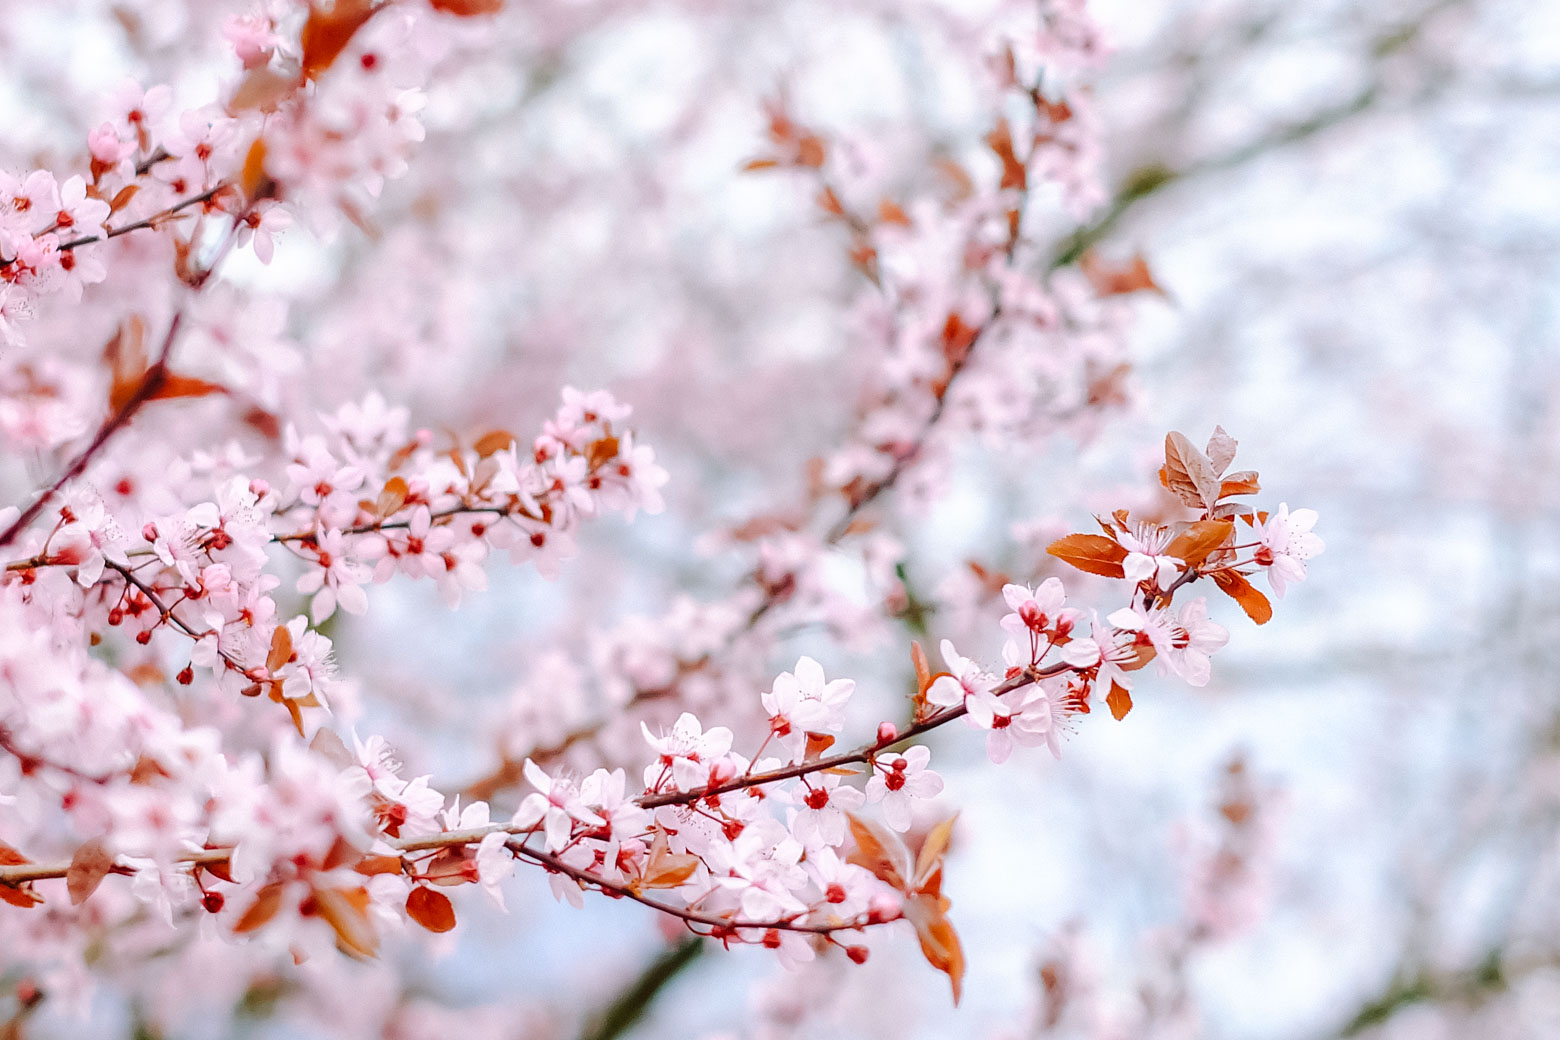 Cherry blossoms in Berlin’s Britzer Garten